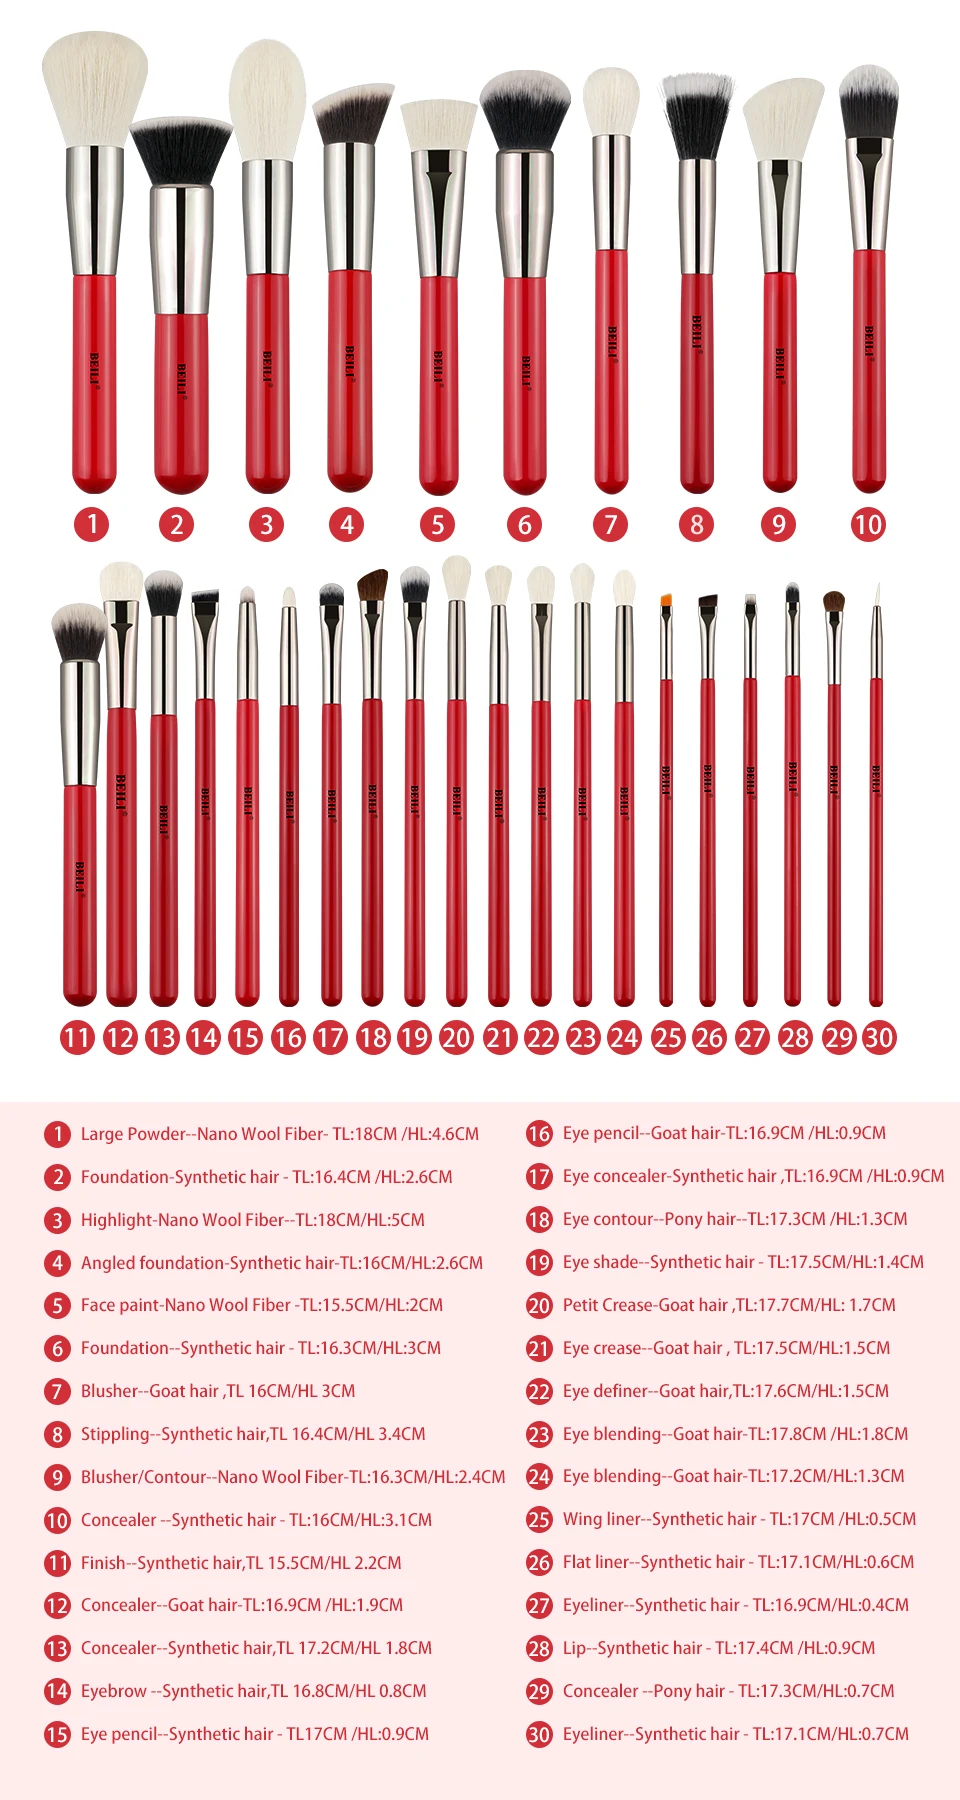 BEILI Red 30 шт. набор профессиональных кистей для макияжа, натуральные волосы, пудра, Тональная основа, румяна, тени для век, подводка для бровей, Кисть для макияжа, инструмент